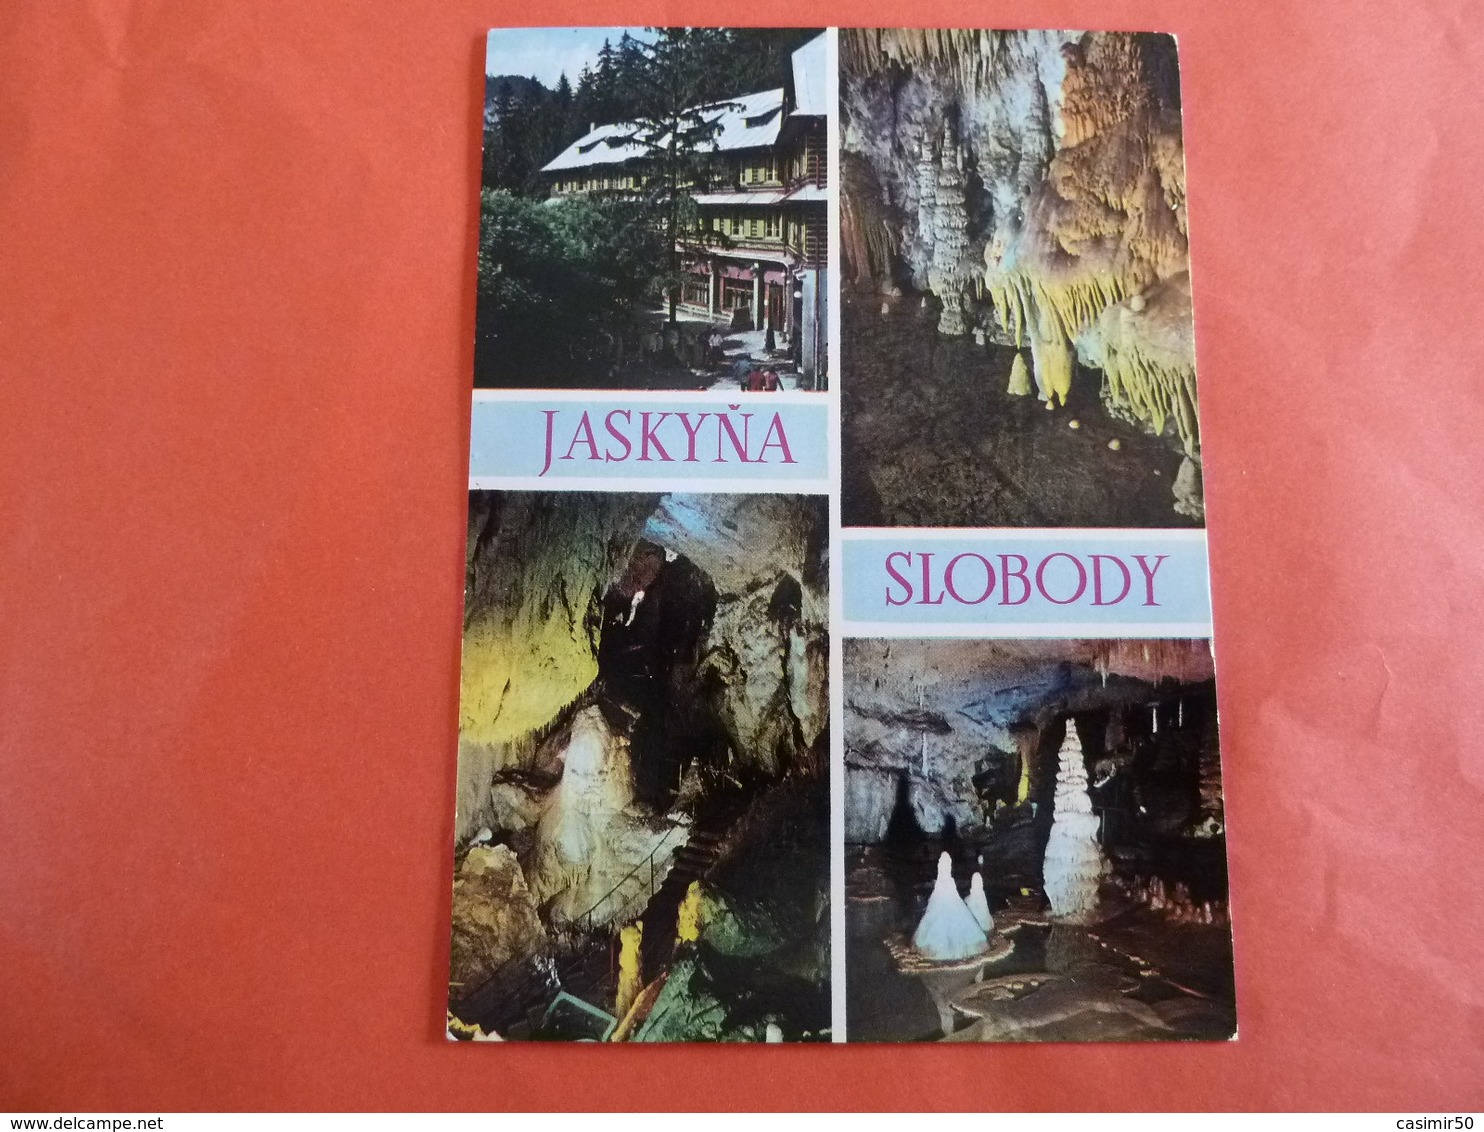 JASKYNA SLOBODY - Slovaquie